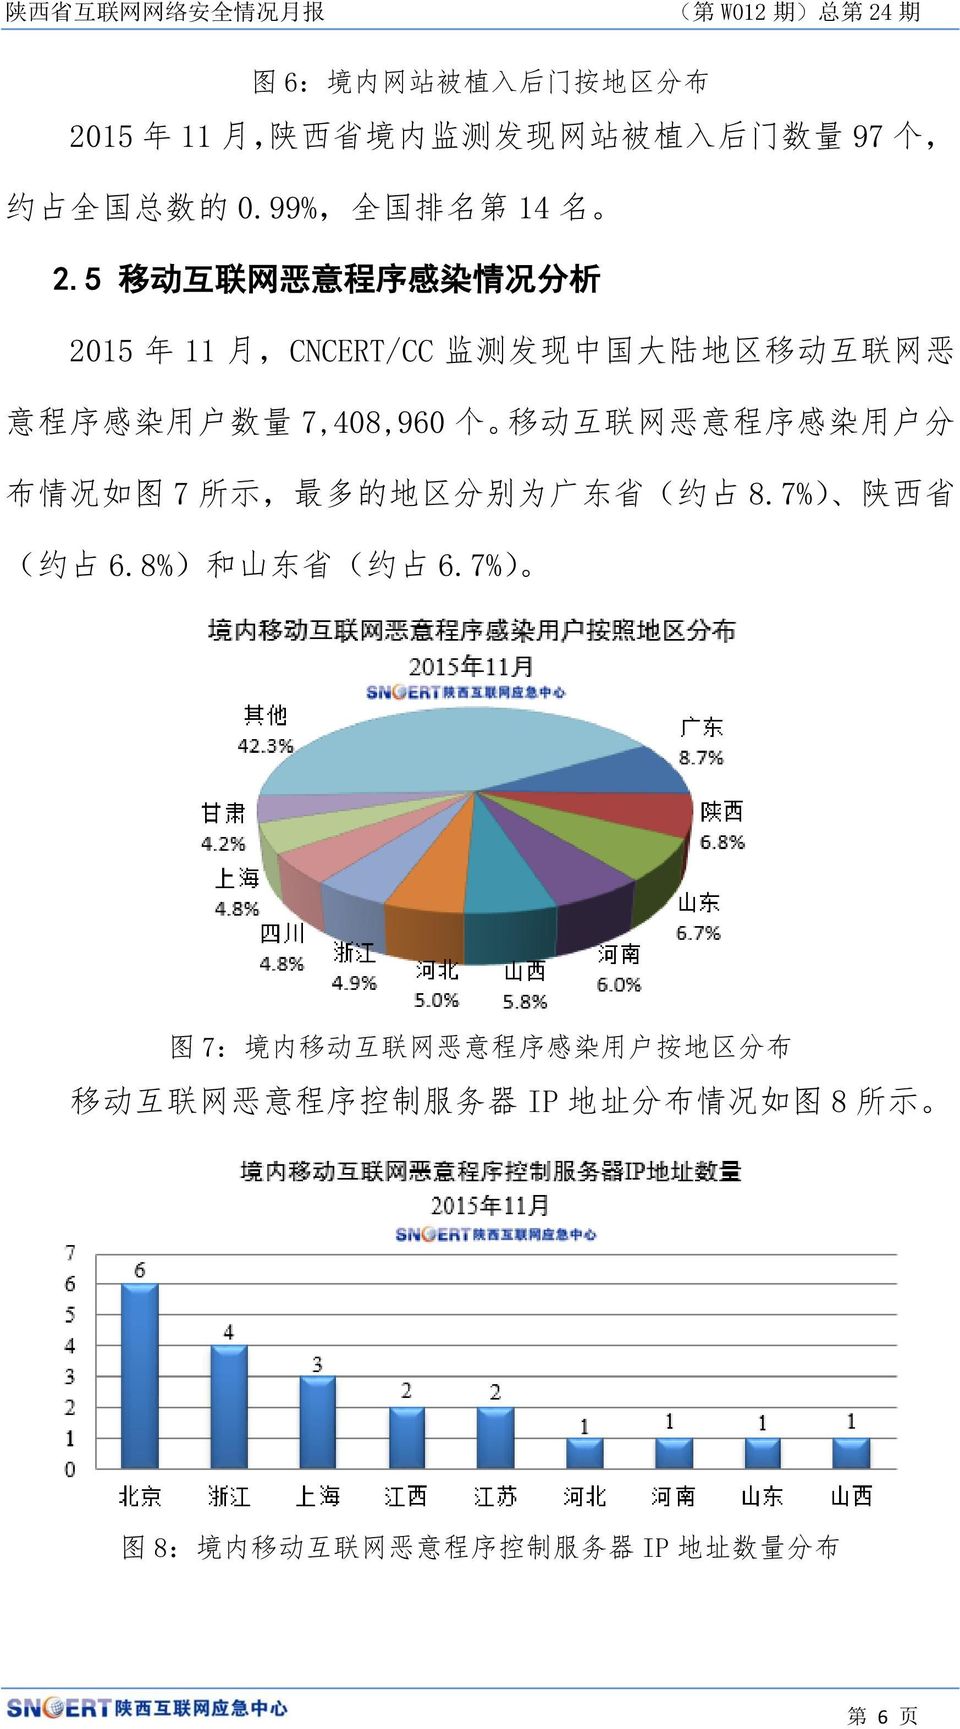 意 程 序 感 染 用 户 分 布 情 况 如 图 7 所 示, 最 多 的 地 区 分 别 为 广 东 省 ( 约 占 8.7%) 陕 西 省 ( 约 占 6.8%) 和 山 东 省 ( 约 占 6.